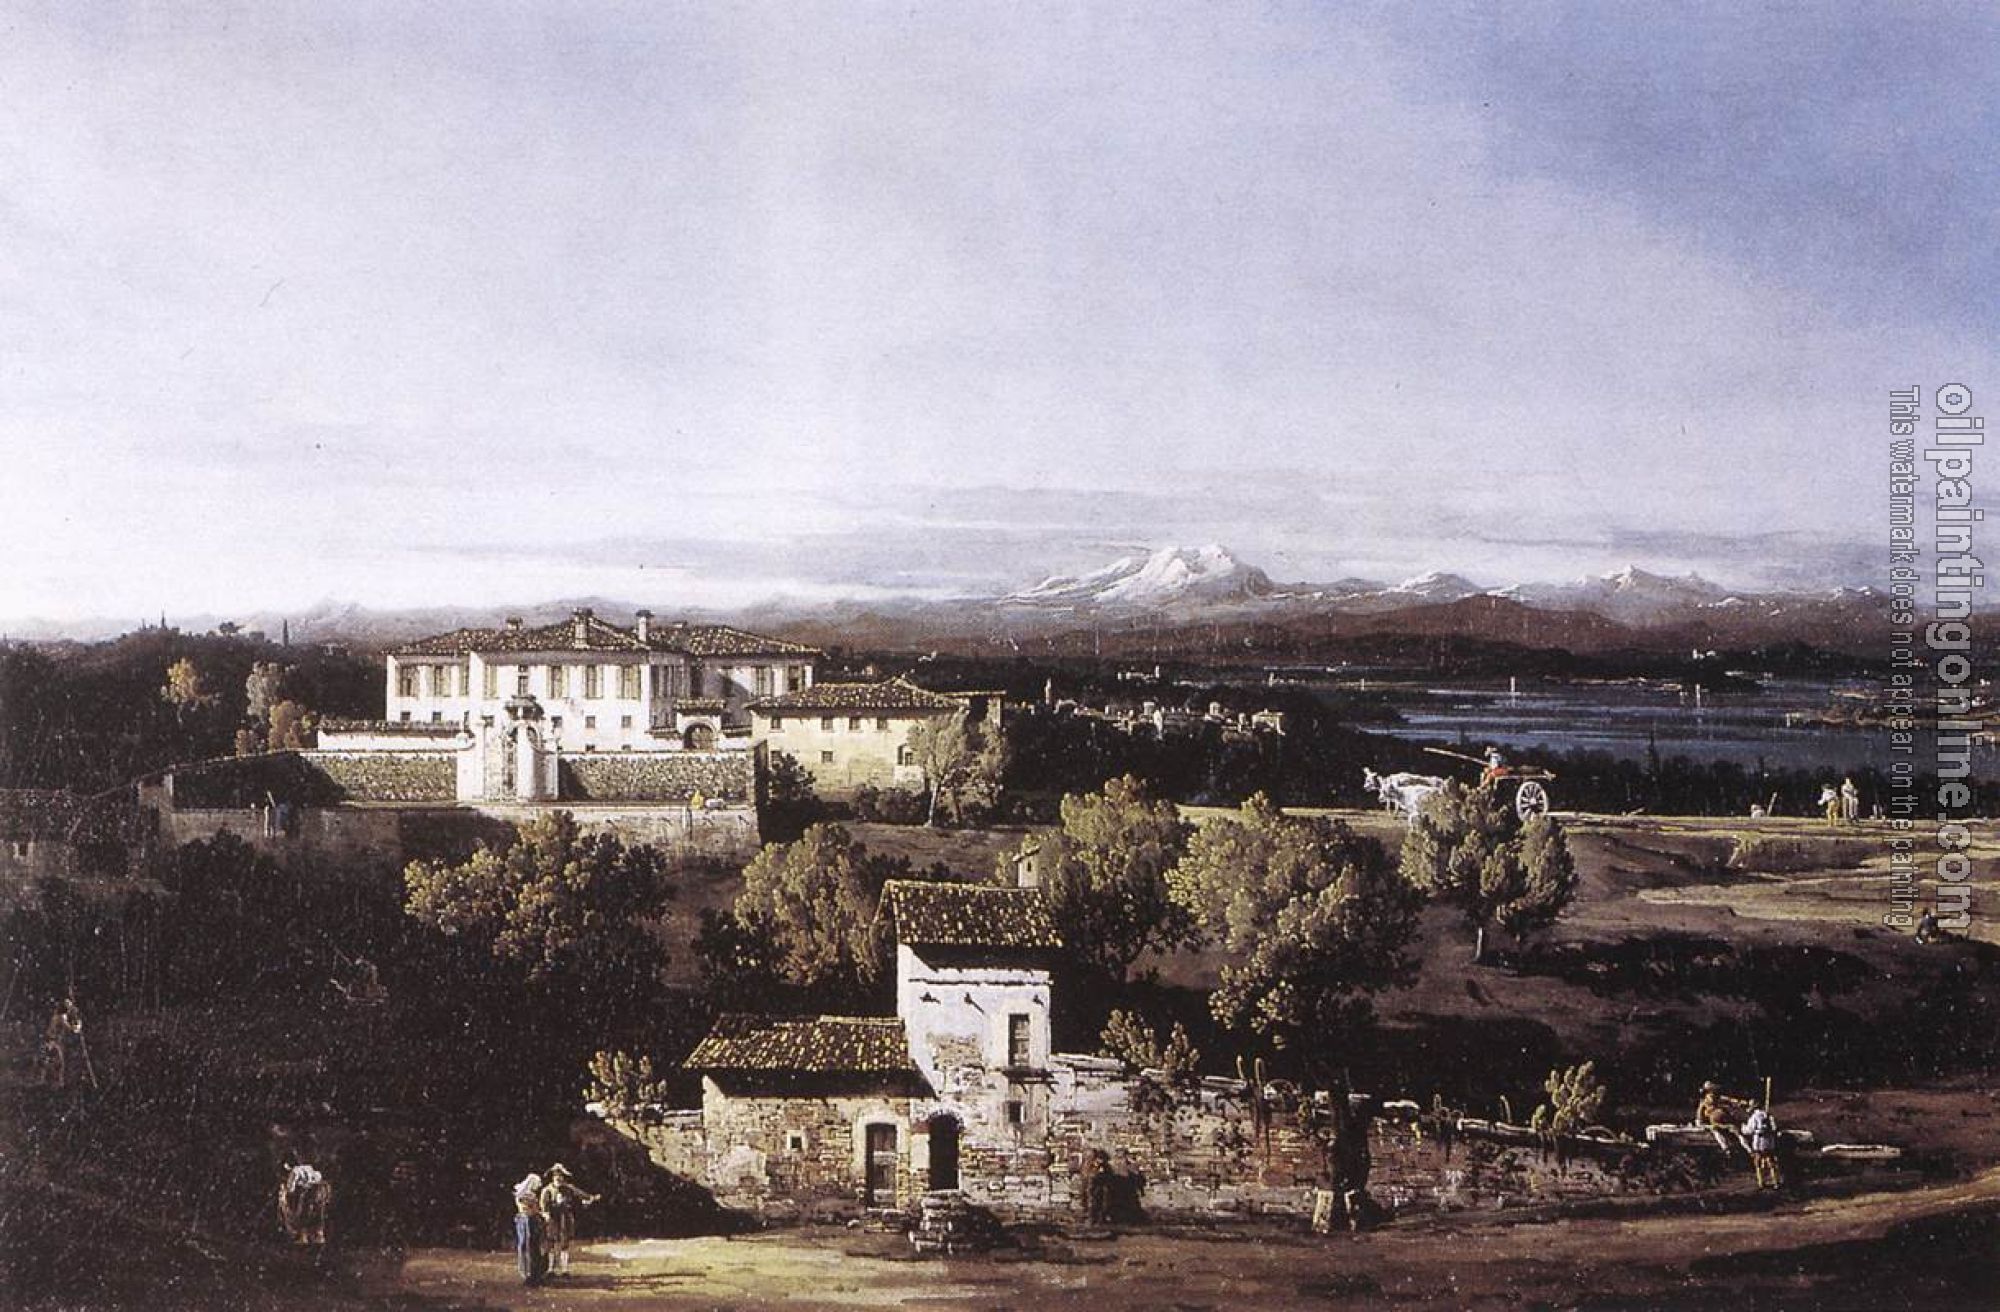 Bellotto, Bernardo - View of the Villa Cagnola at Gazzada near Varese